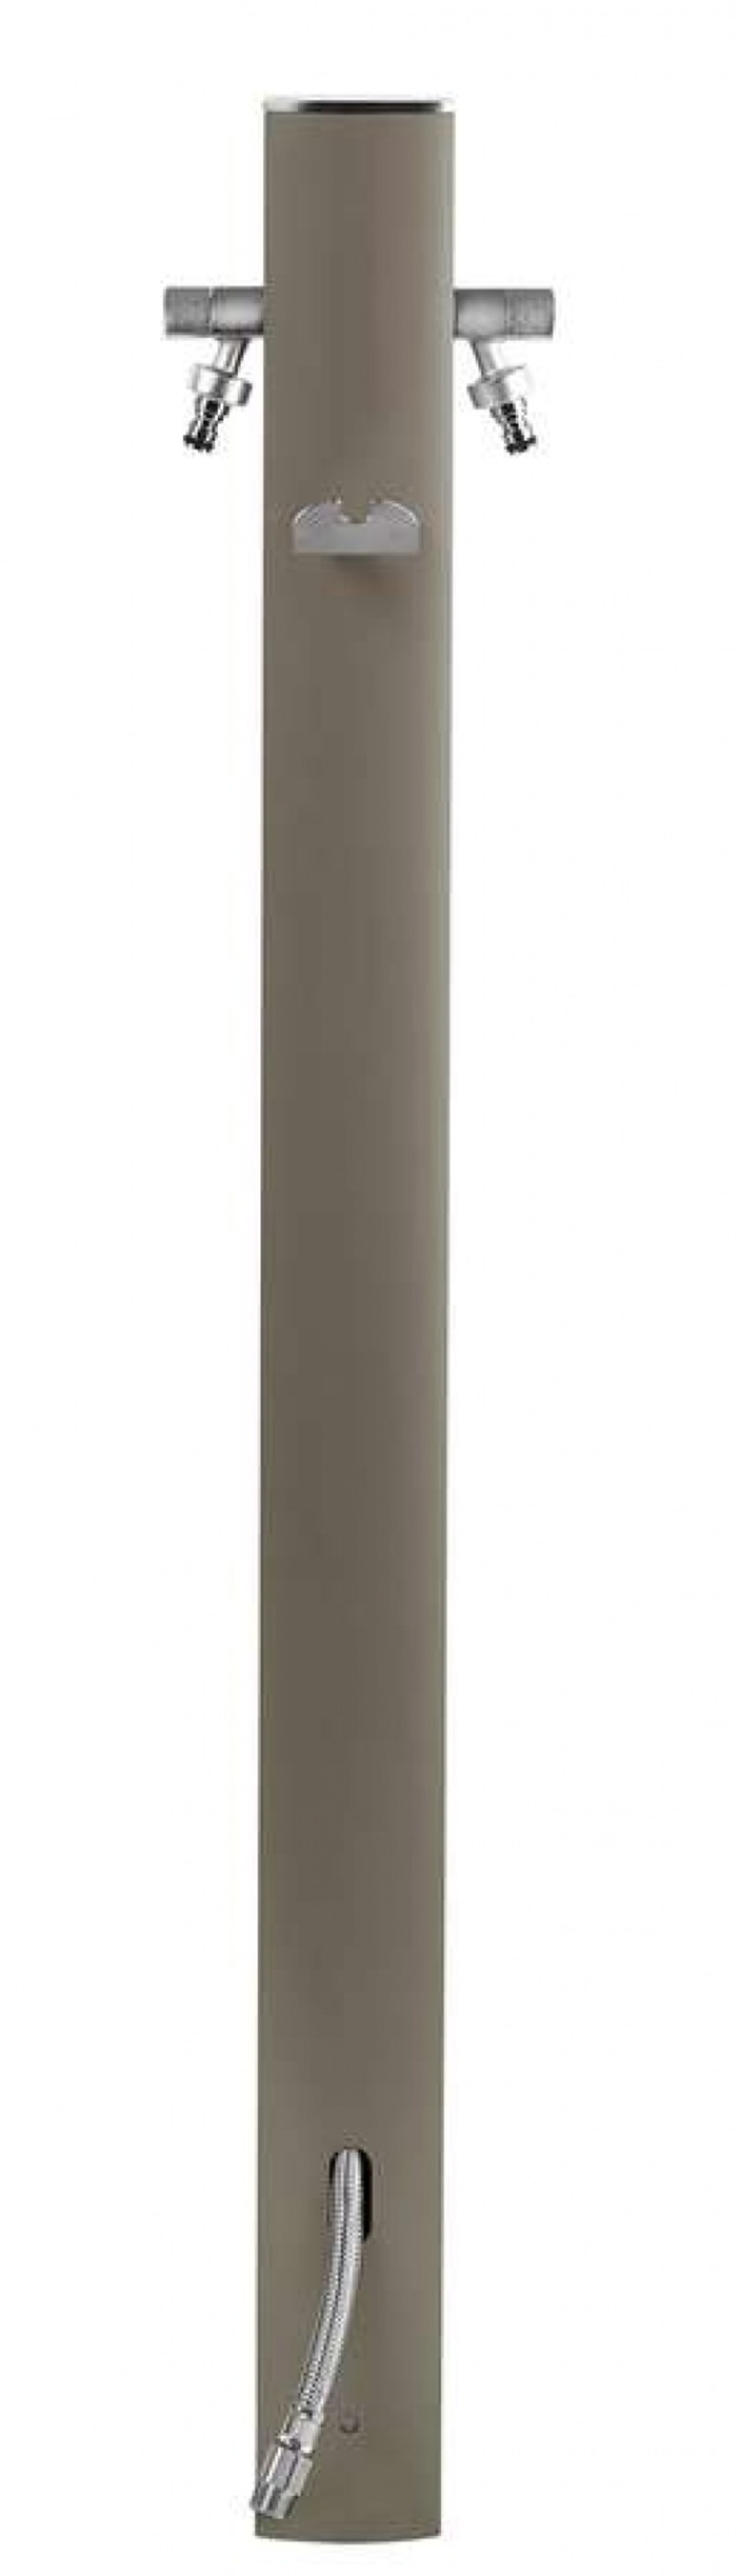 Colonne d'eau totem grise tourterelle - 120 cm - aluminium - double robine